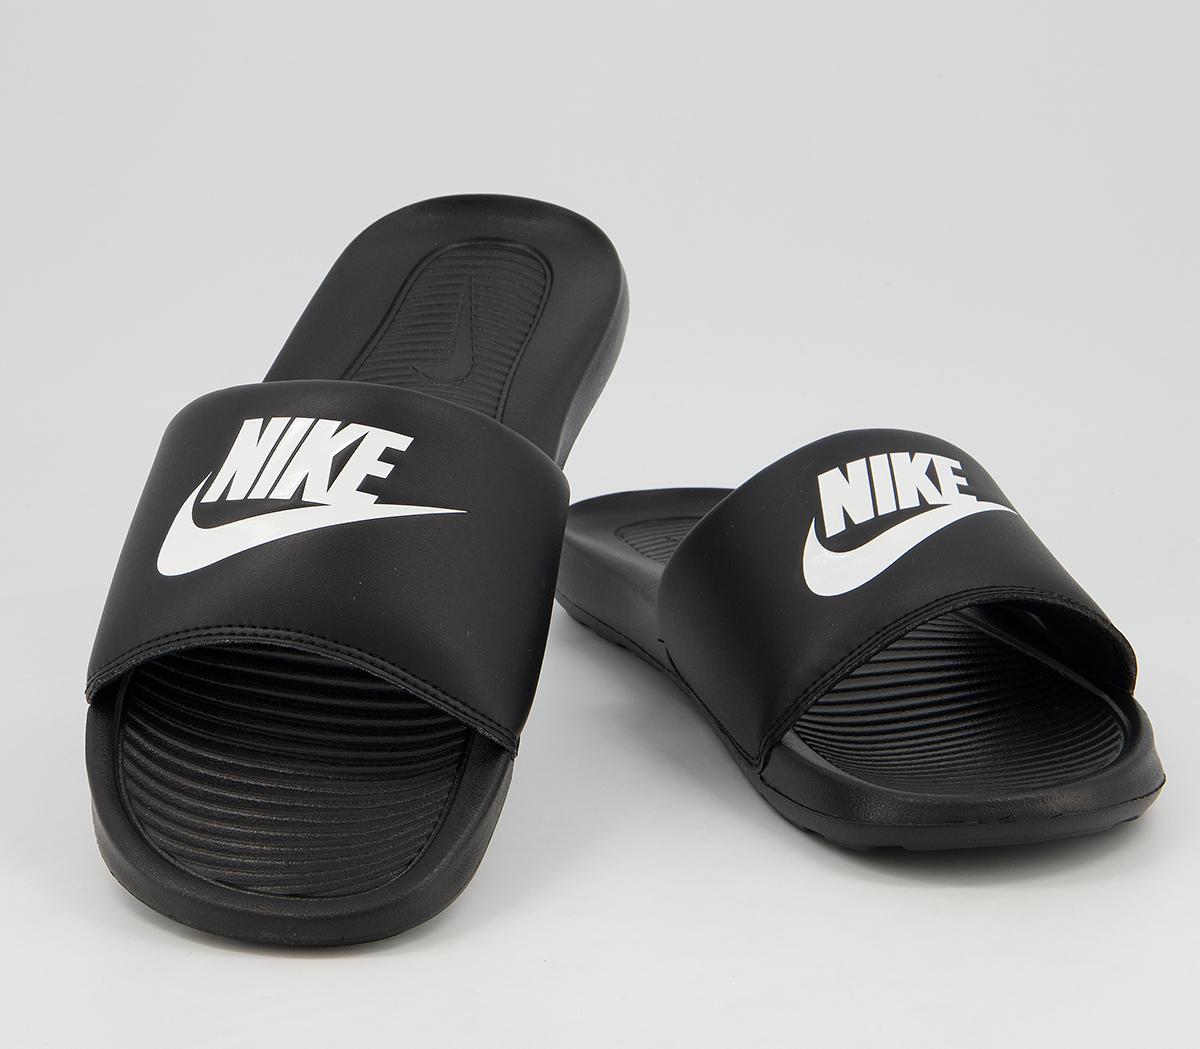 Nike Victori One Slides Black White - Men’s Sandals